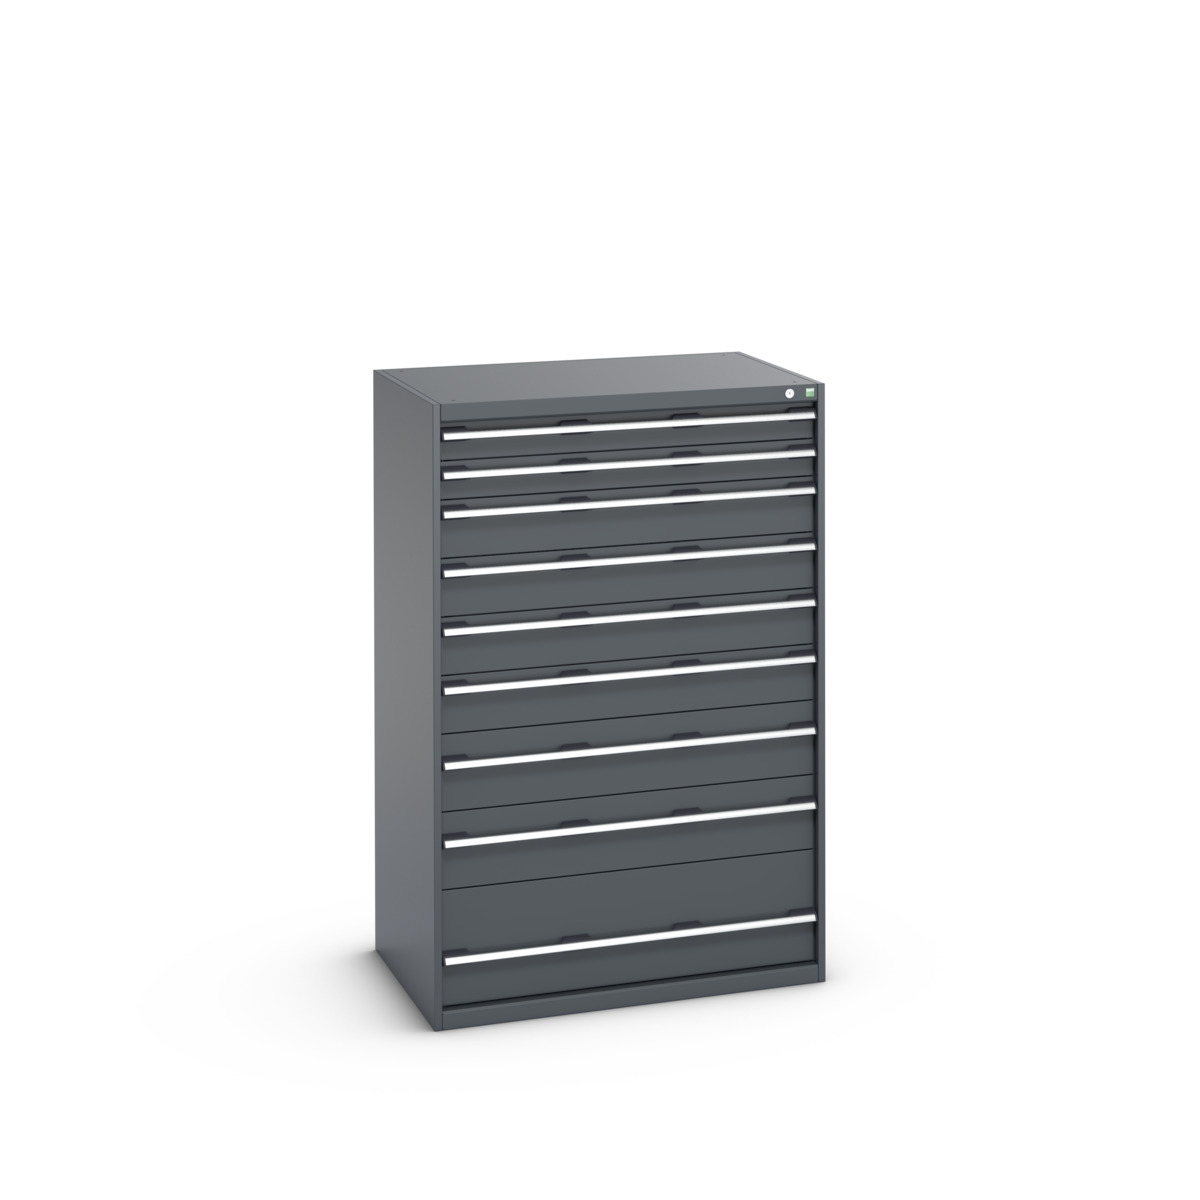 40029035.77V - cubio drawer cabinet